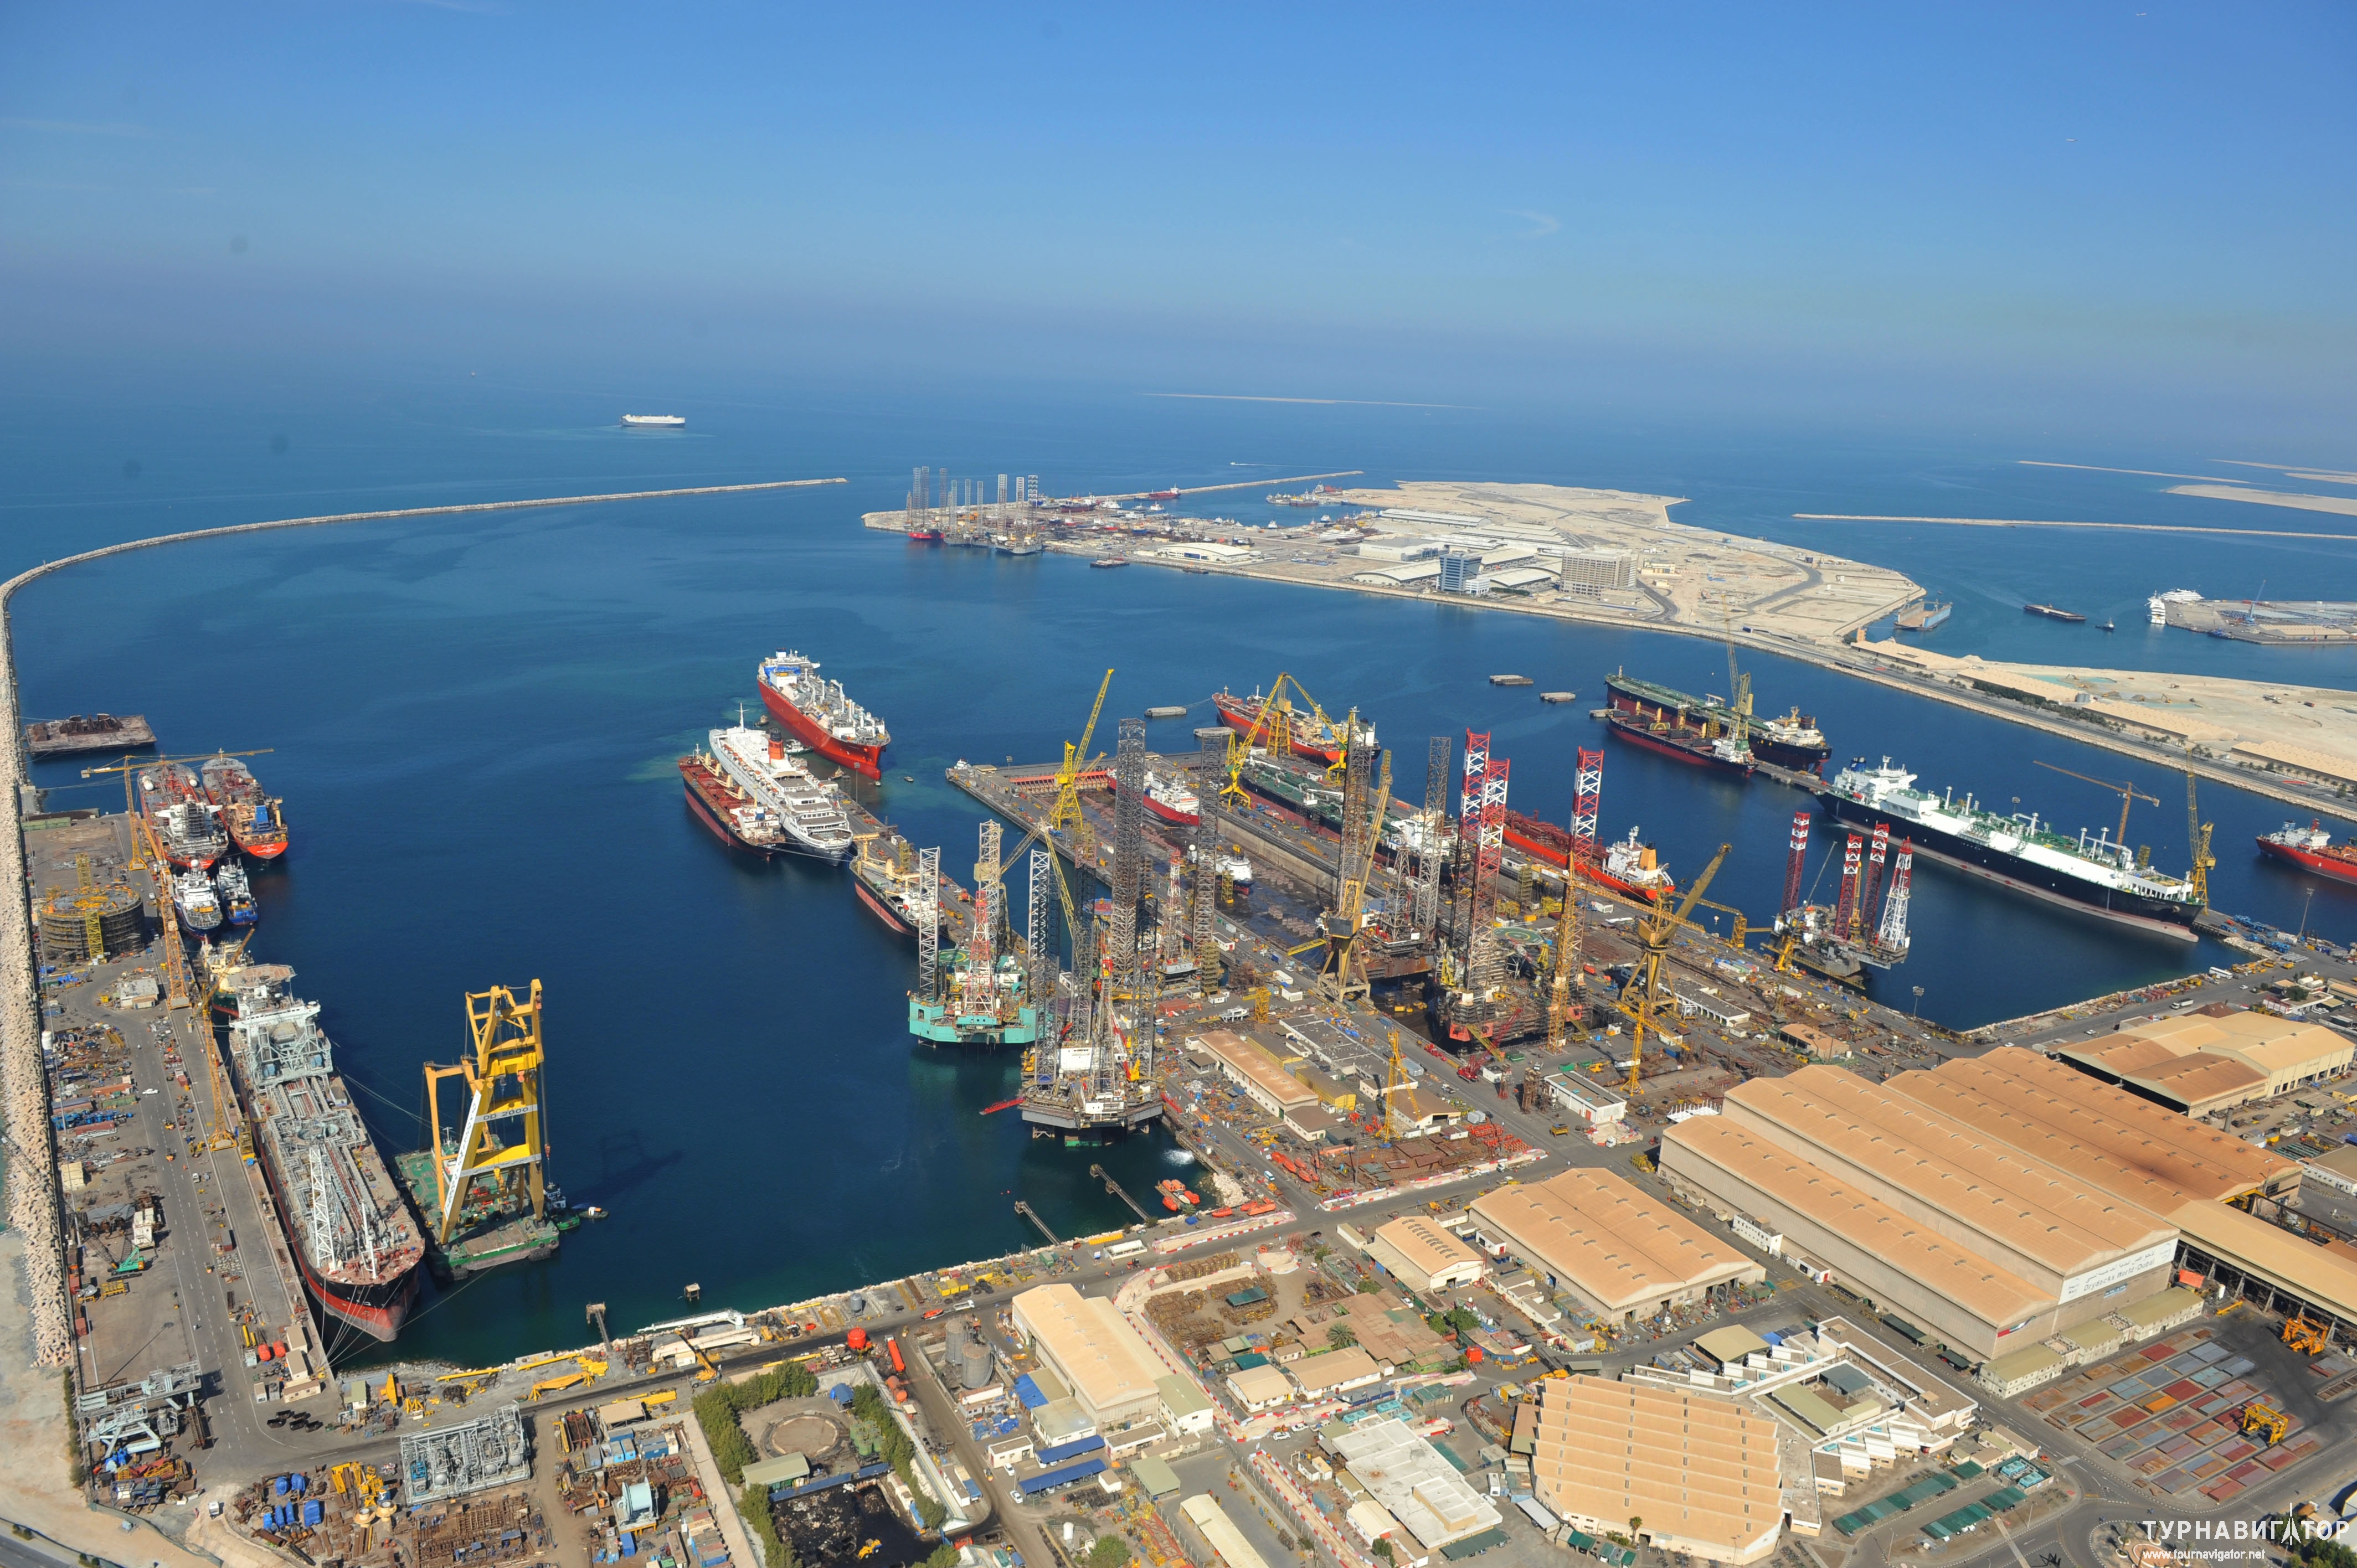 Свободная экономическая зона что это простыми словами. Maritime City Дубай. Дубаи судоремонтный завод. Свободные экономические зоны (СЭЗ). Свободные экономические зоны в Дубае.